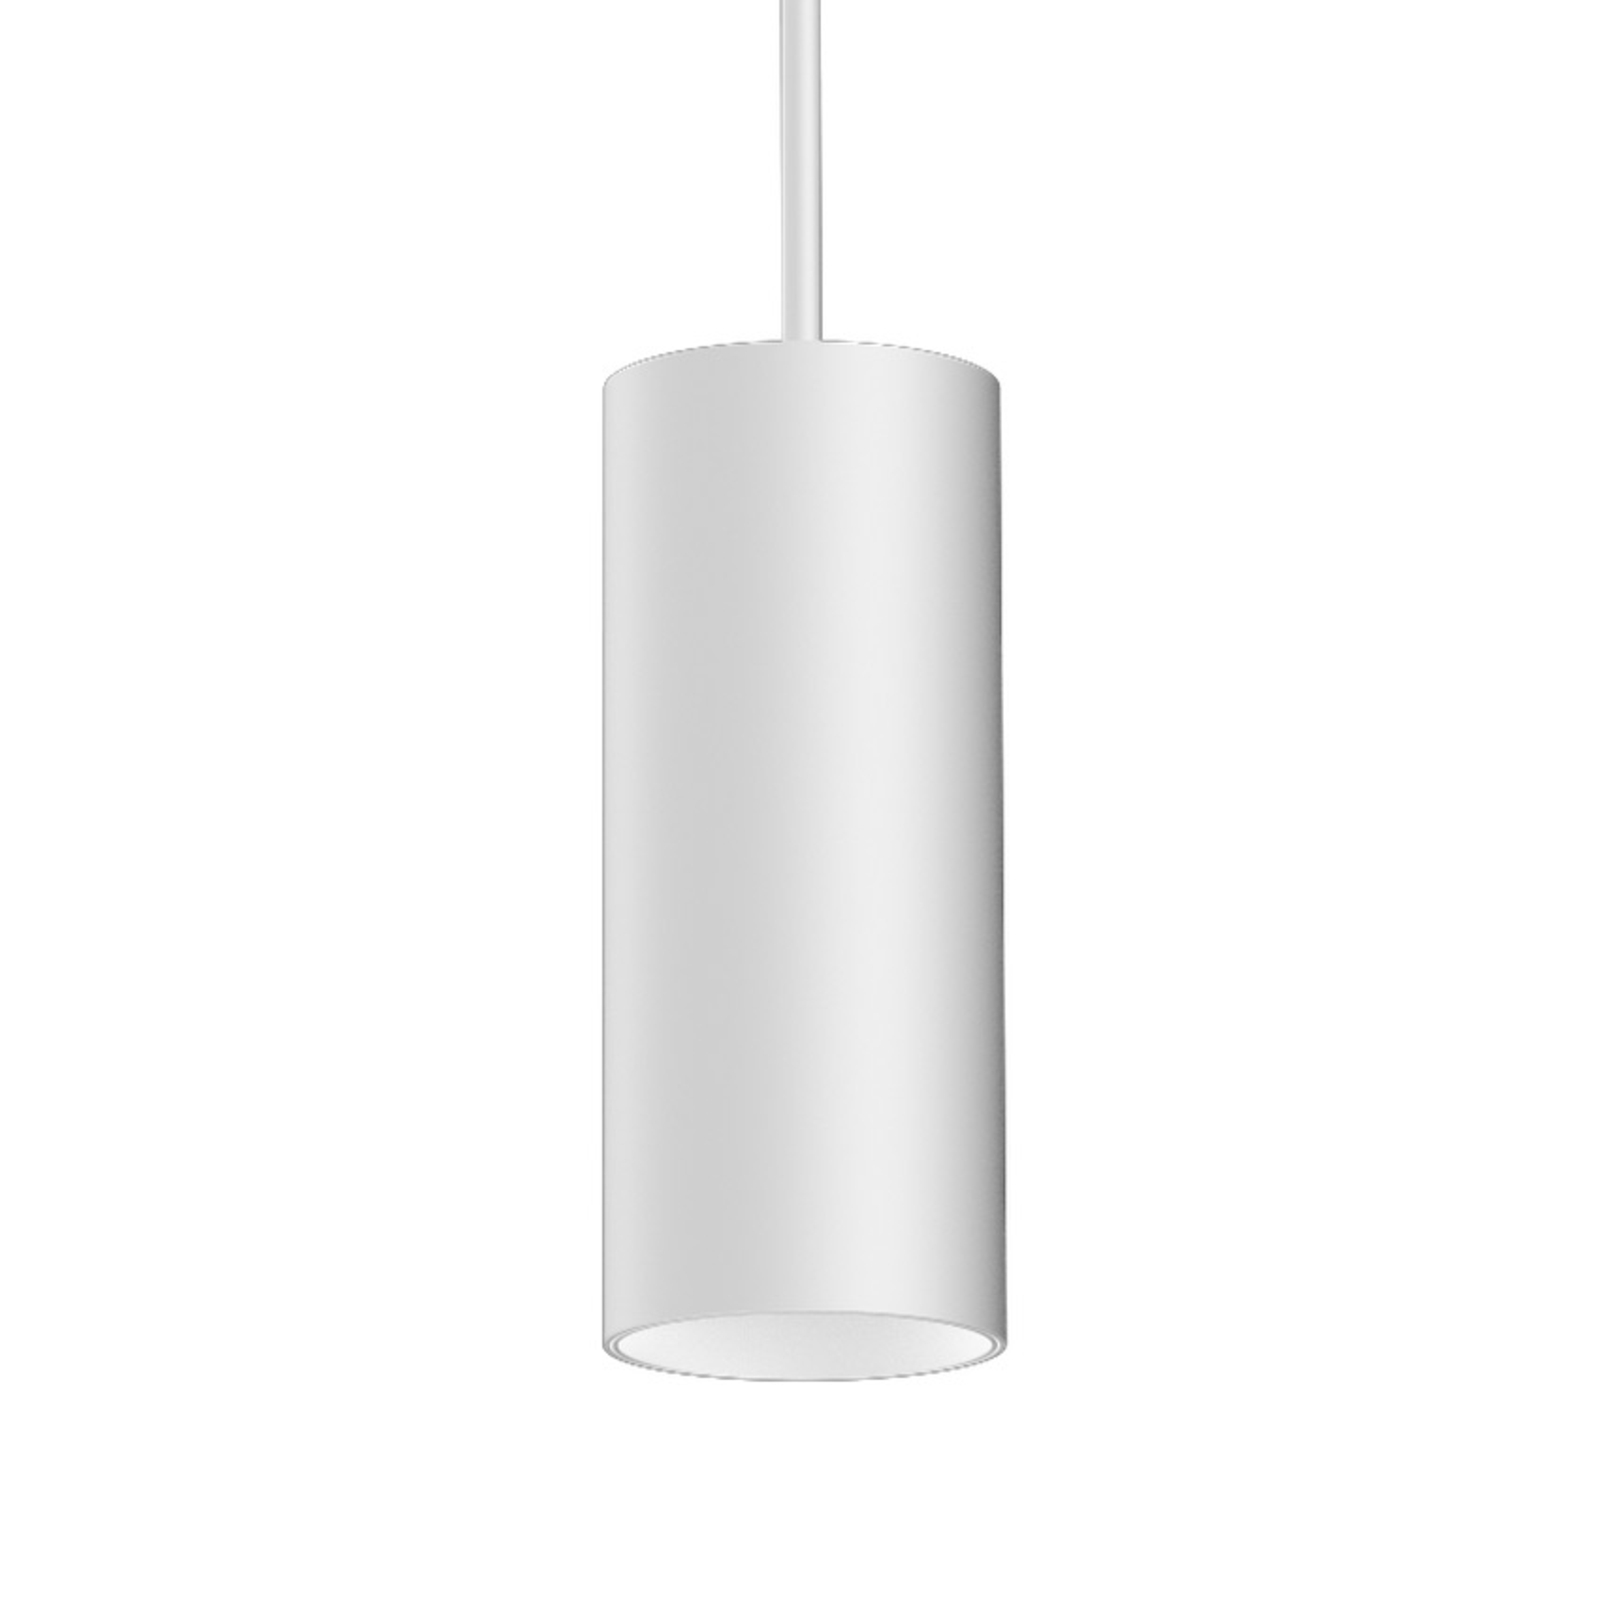 XAL Ary LED pakabinamas šviestuvas DALI baltas 930 44°